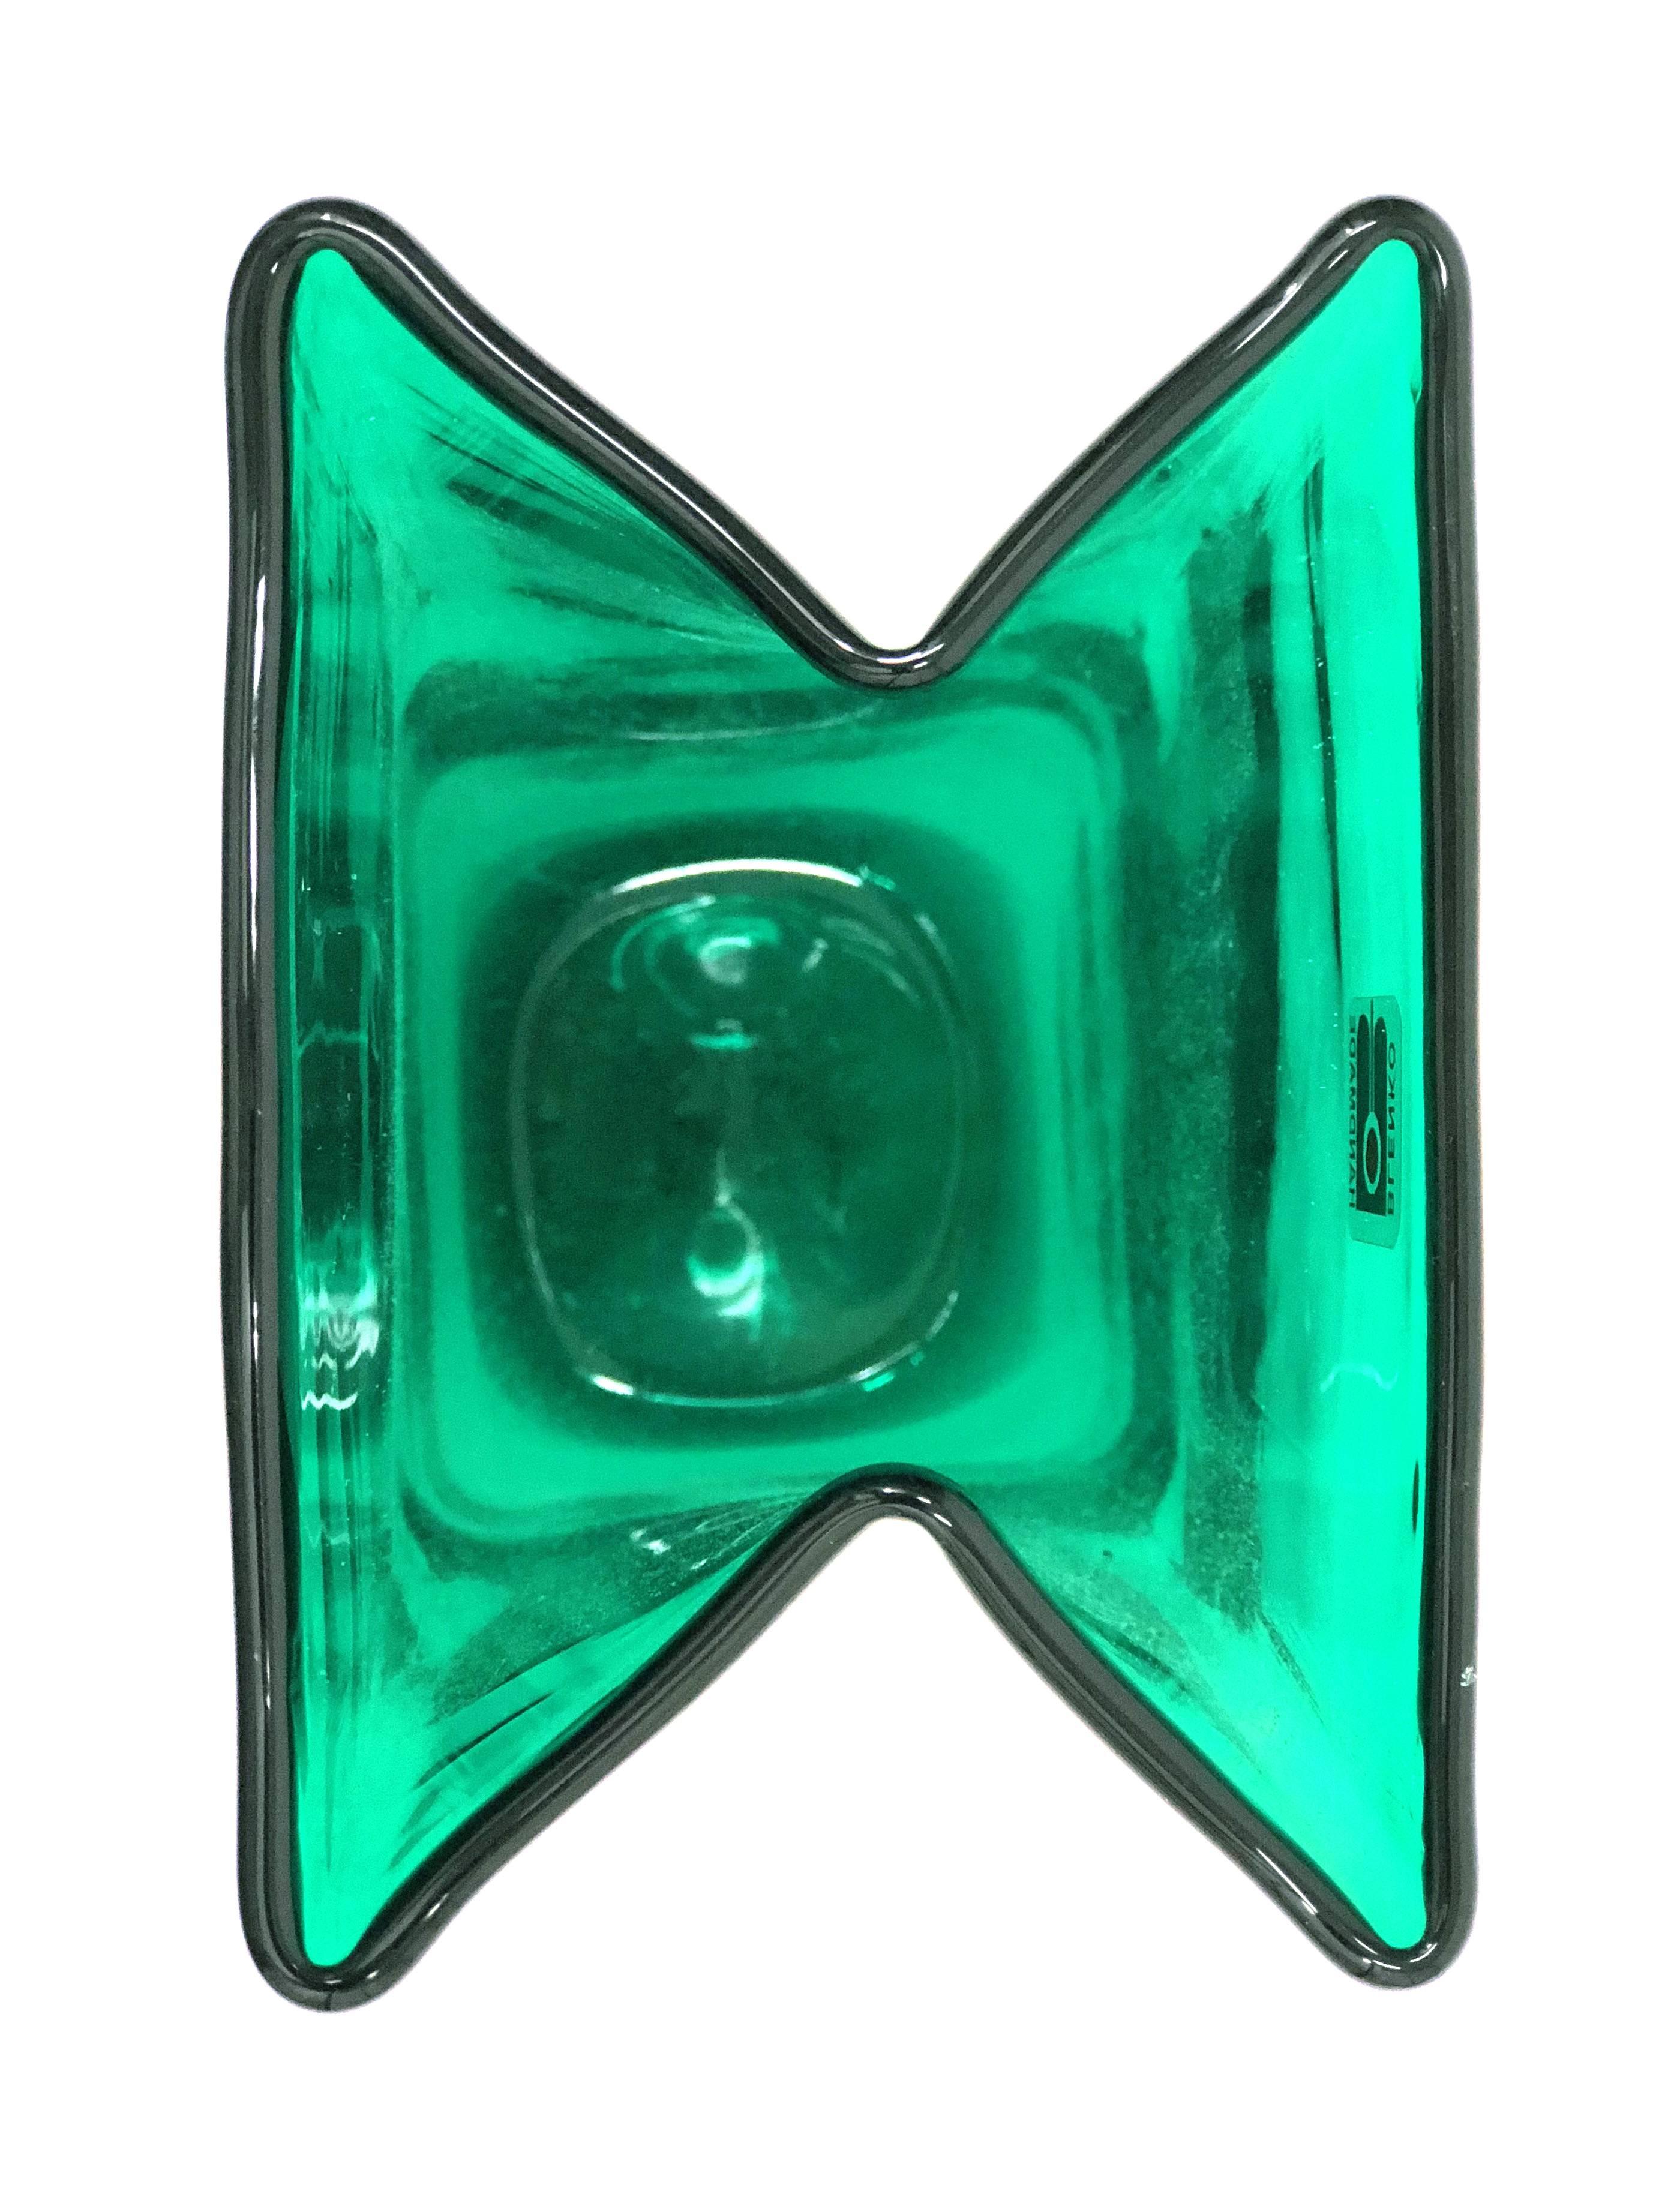 Mid-Century Modern Midcentury Green Folded Glass Vase by Don Shepherd for Blenko For Sale